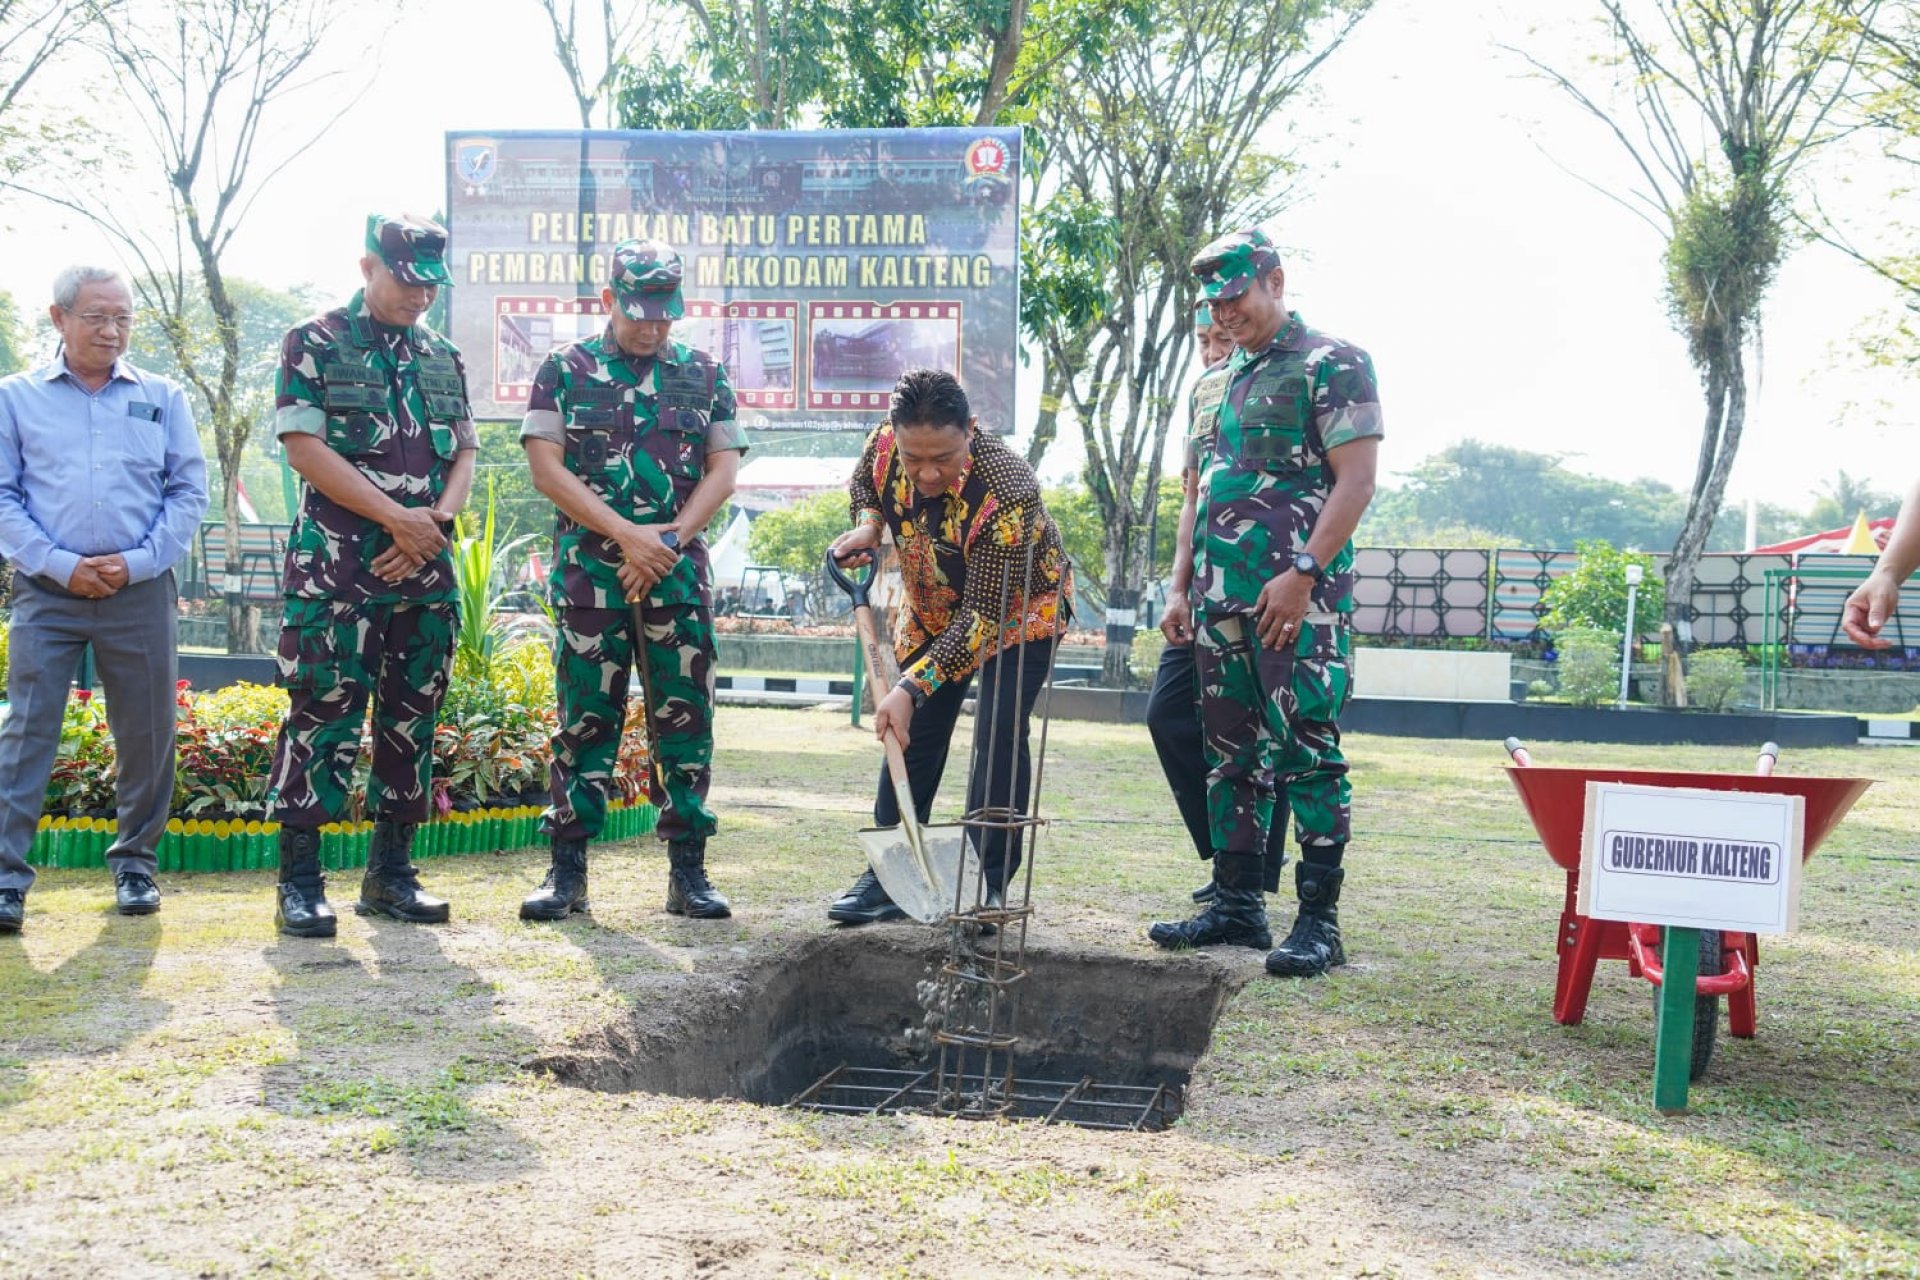 Wagub Edy Pratowo Lakukan Peletakan Batu Pertama Pembangunan Makodam di Kalteng